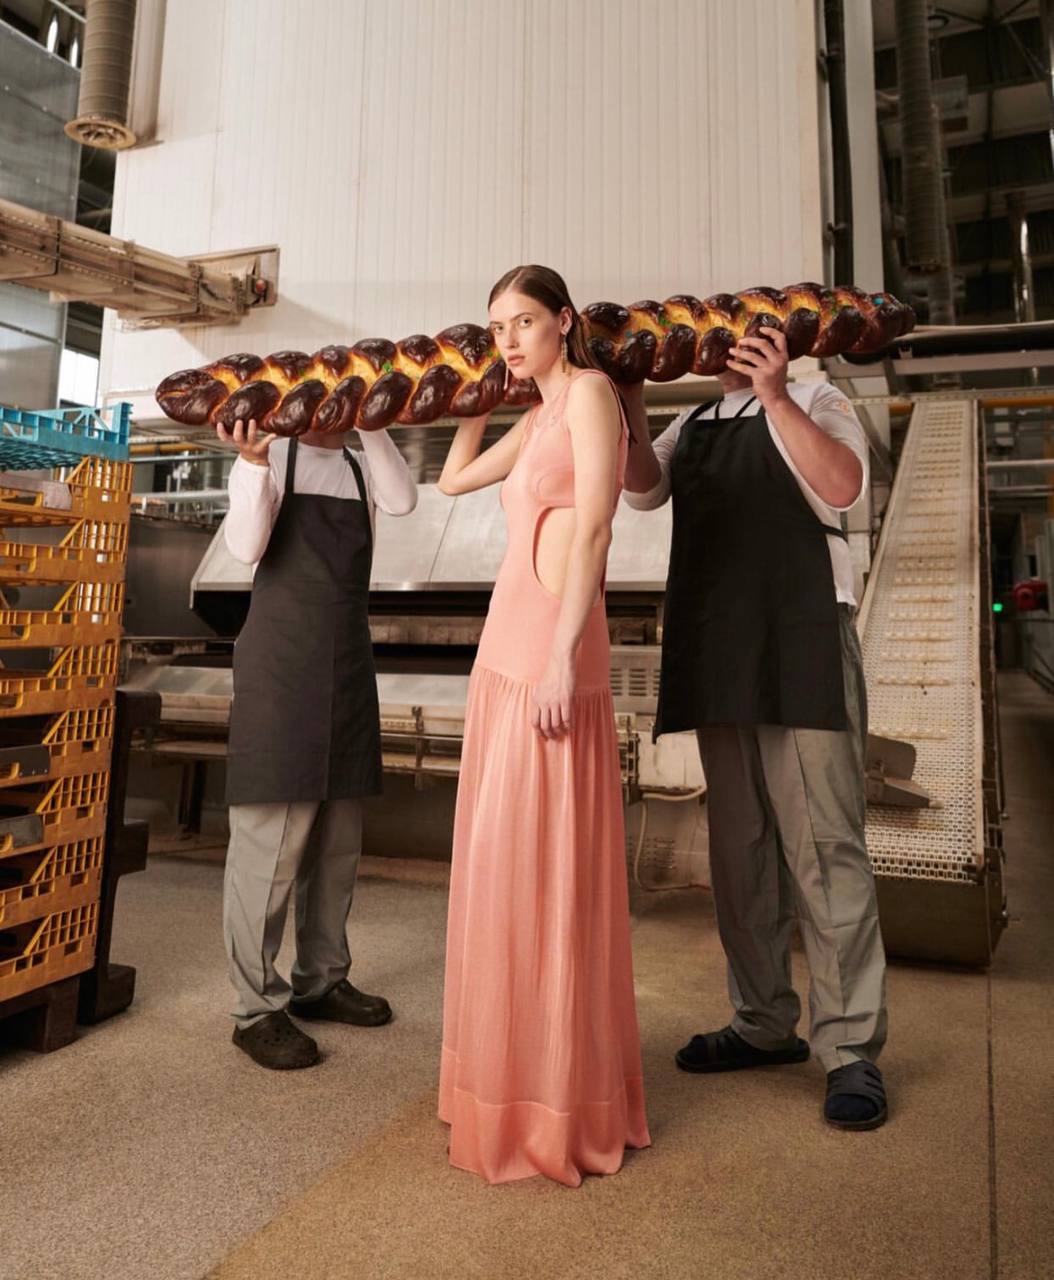 Цена хлеба: бренд BEVZA представил концептуальную съемку в пекарне